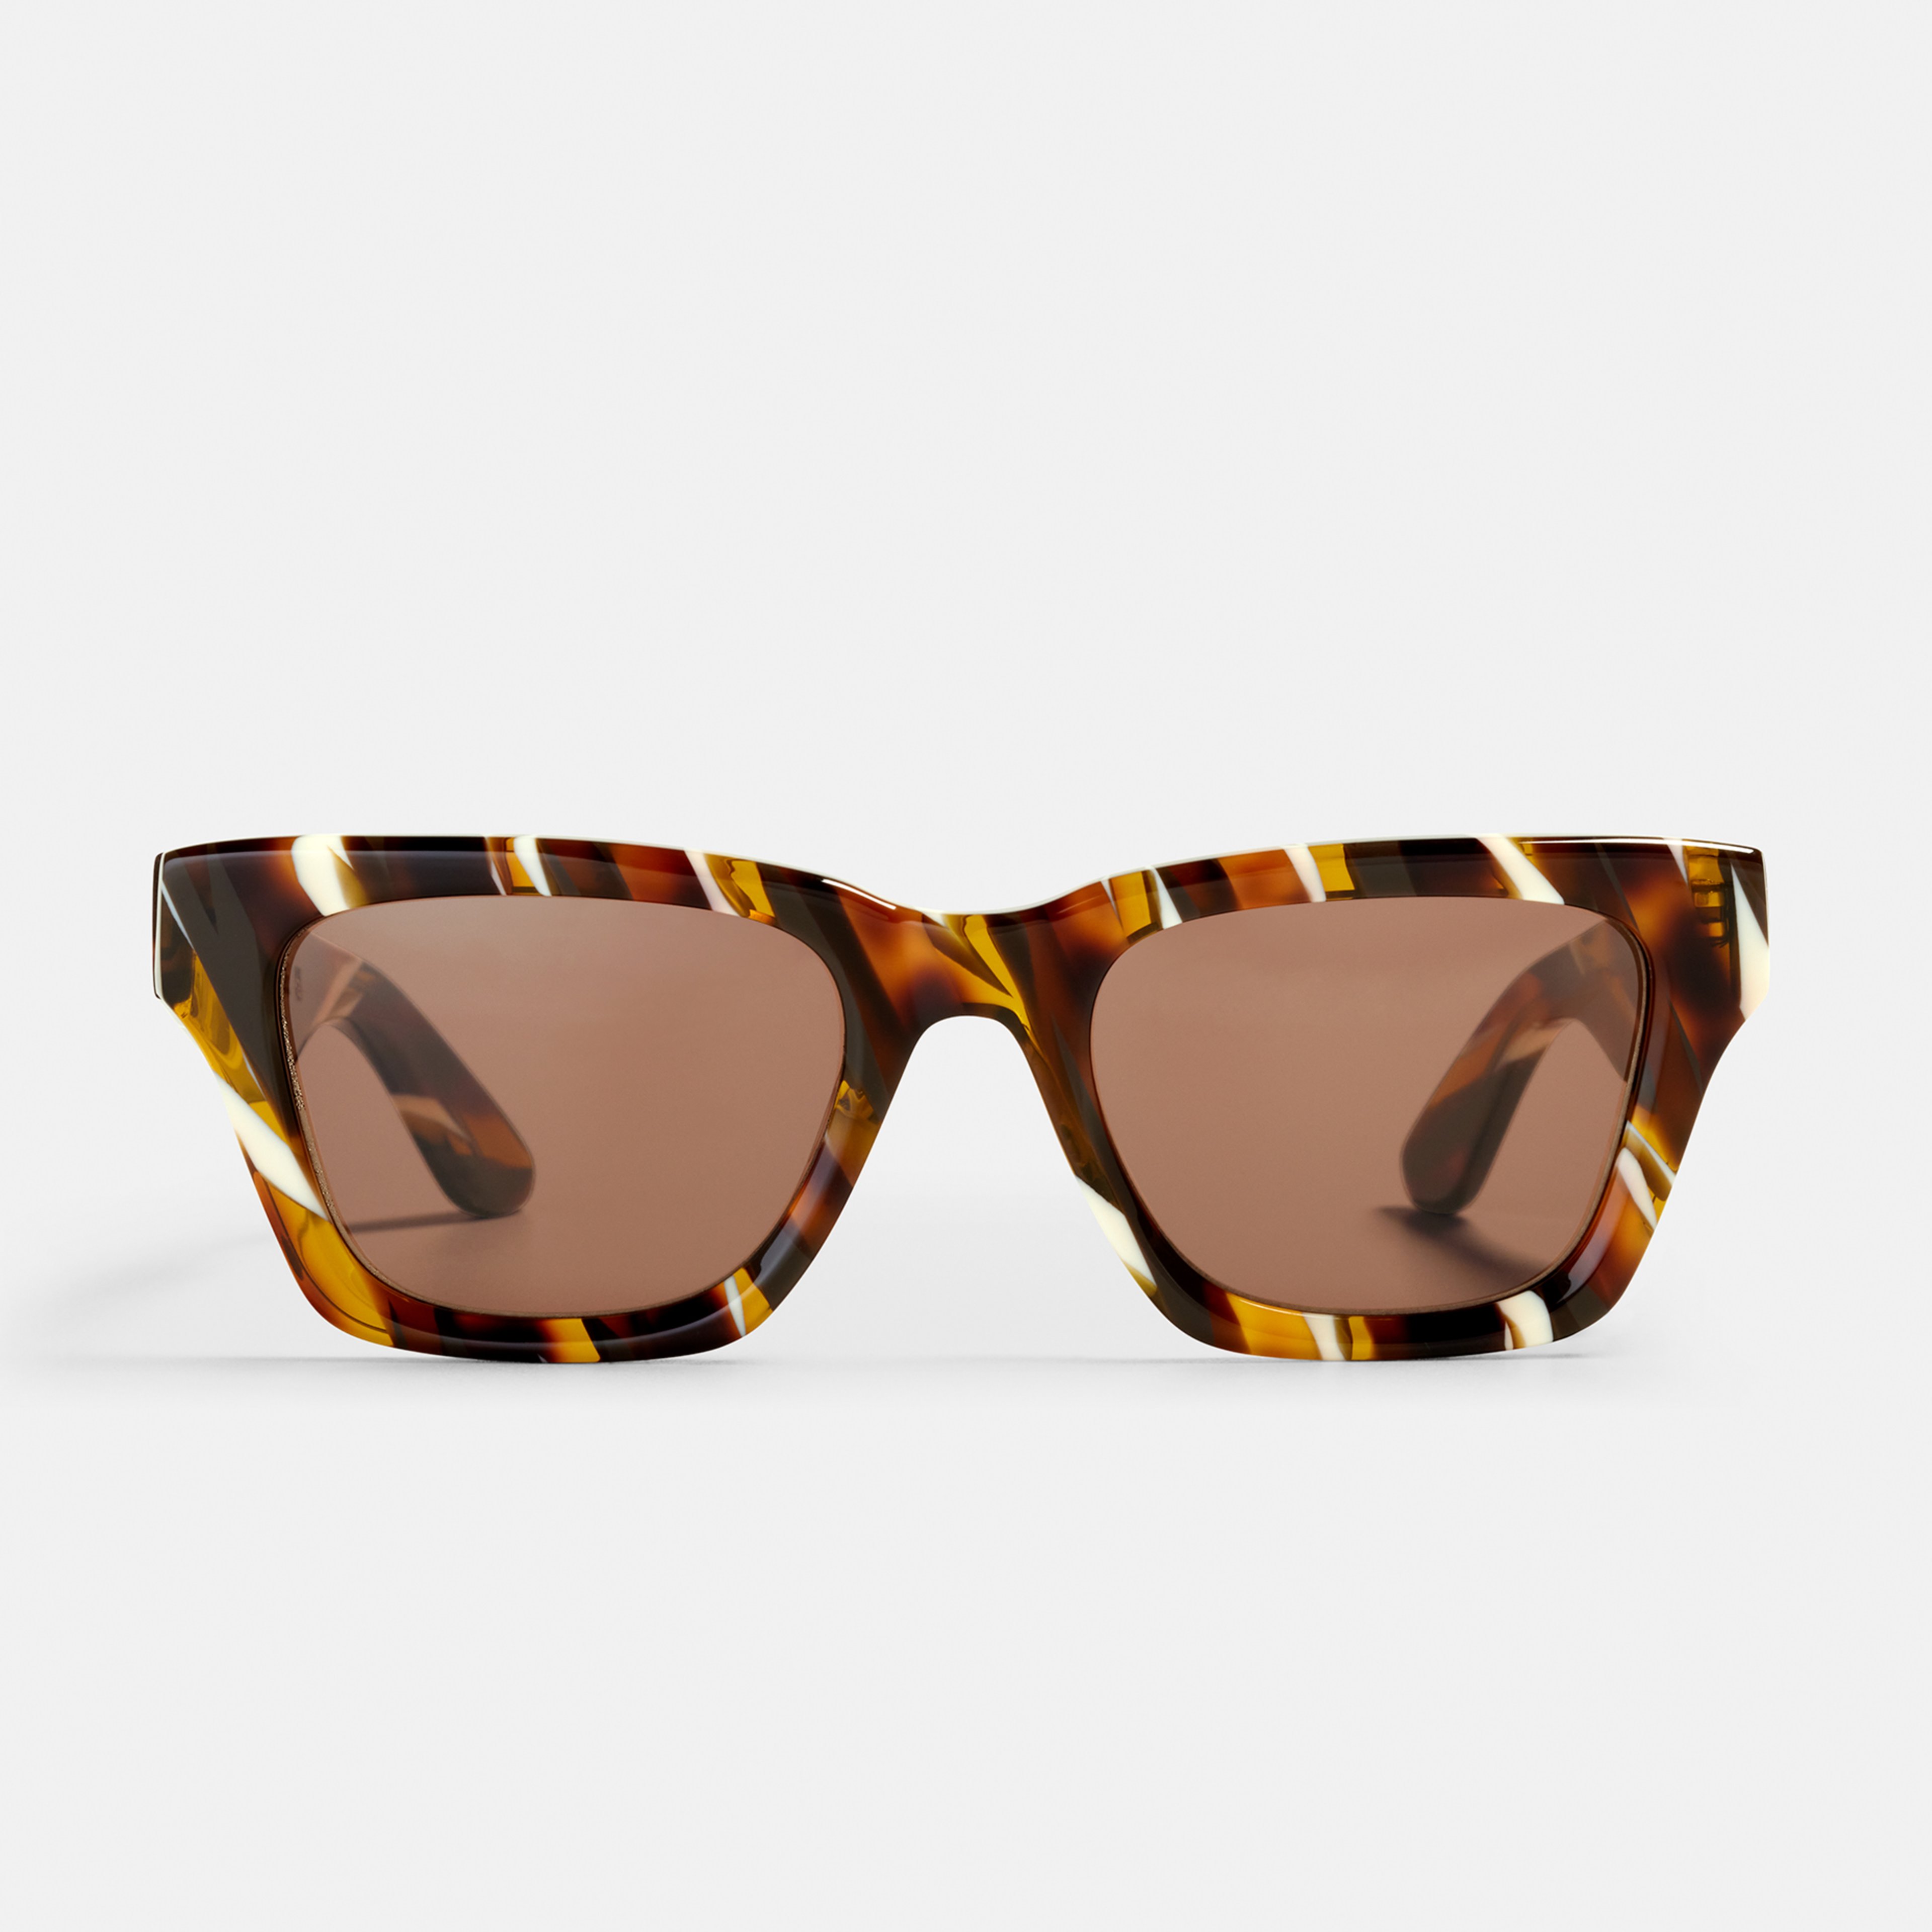 Ace & Tate Sunglasses | Square Bio acetate in Brown, White